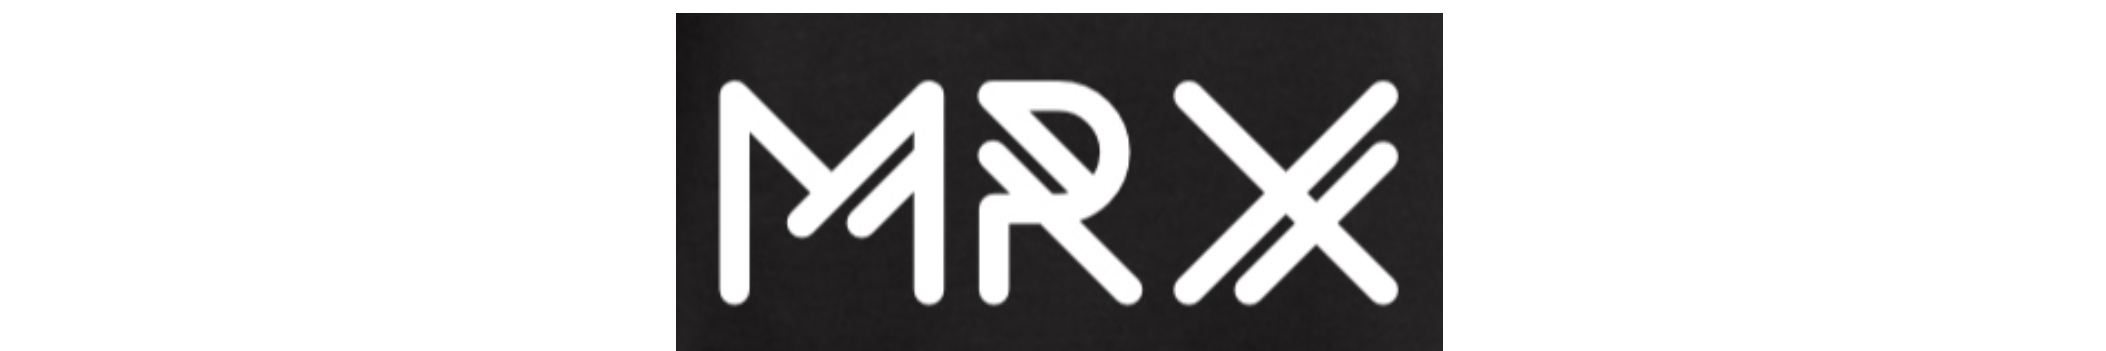 MRX_Music